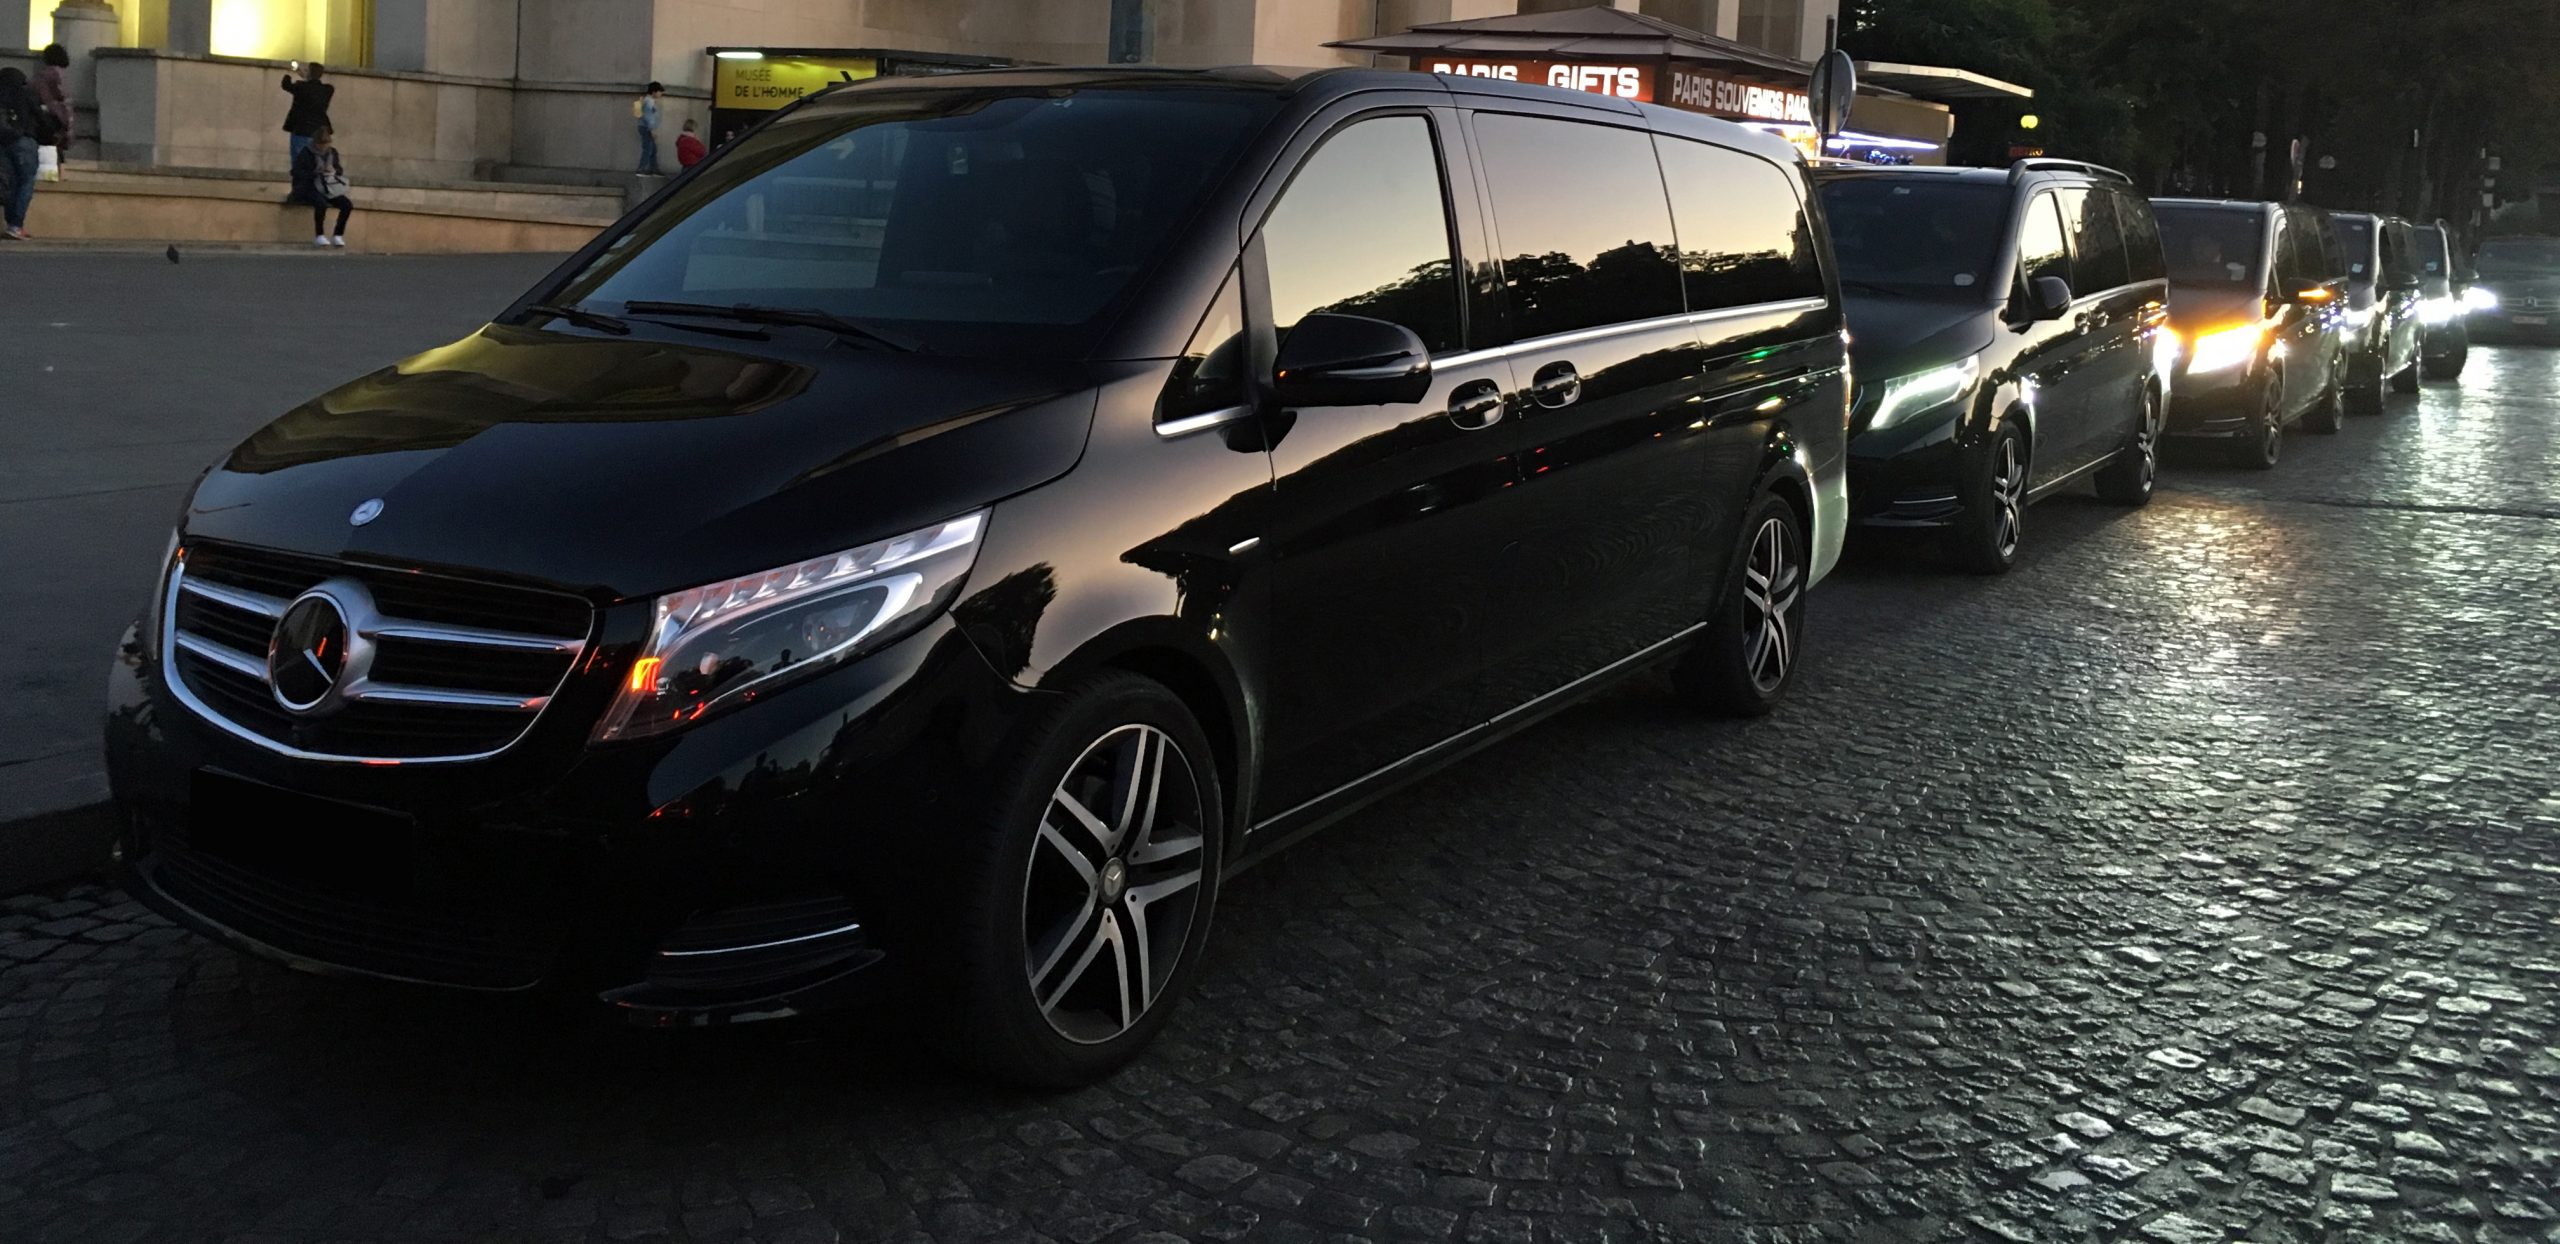 Excellence VIP ofrece minivans Mercedes Clase V para sus viajes de grupo y delegaciones oficiales.